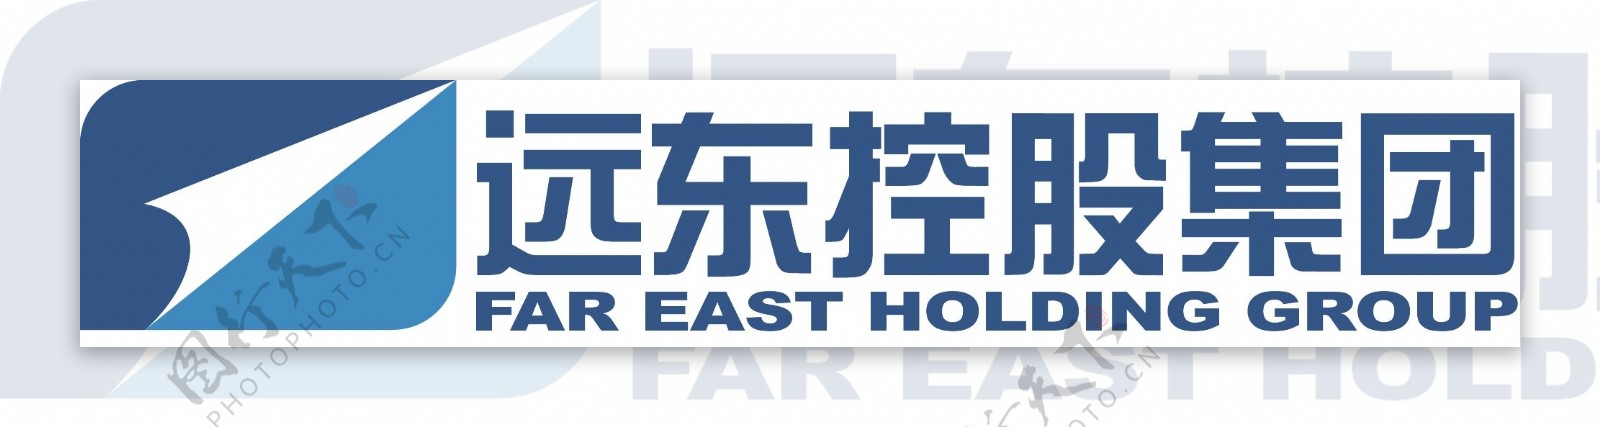 远东控股logo图片